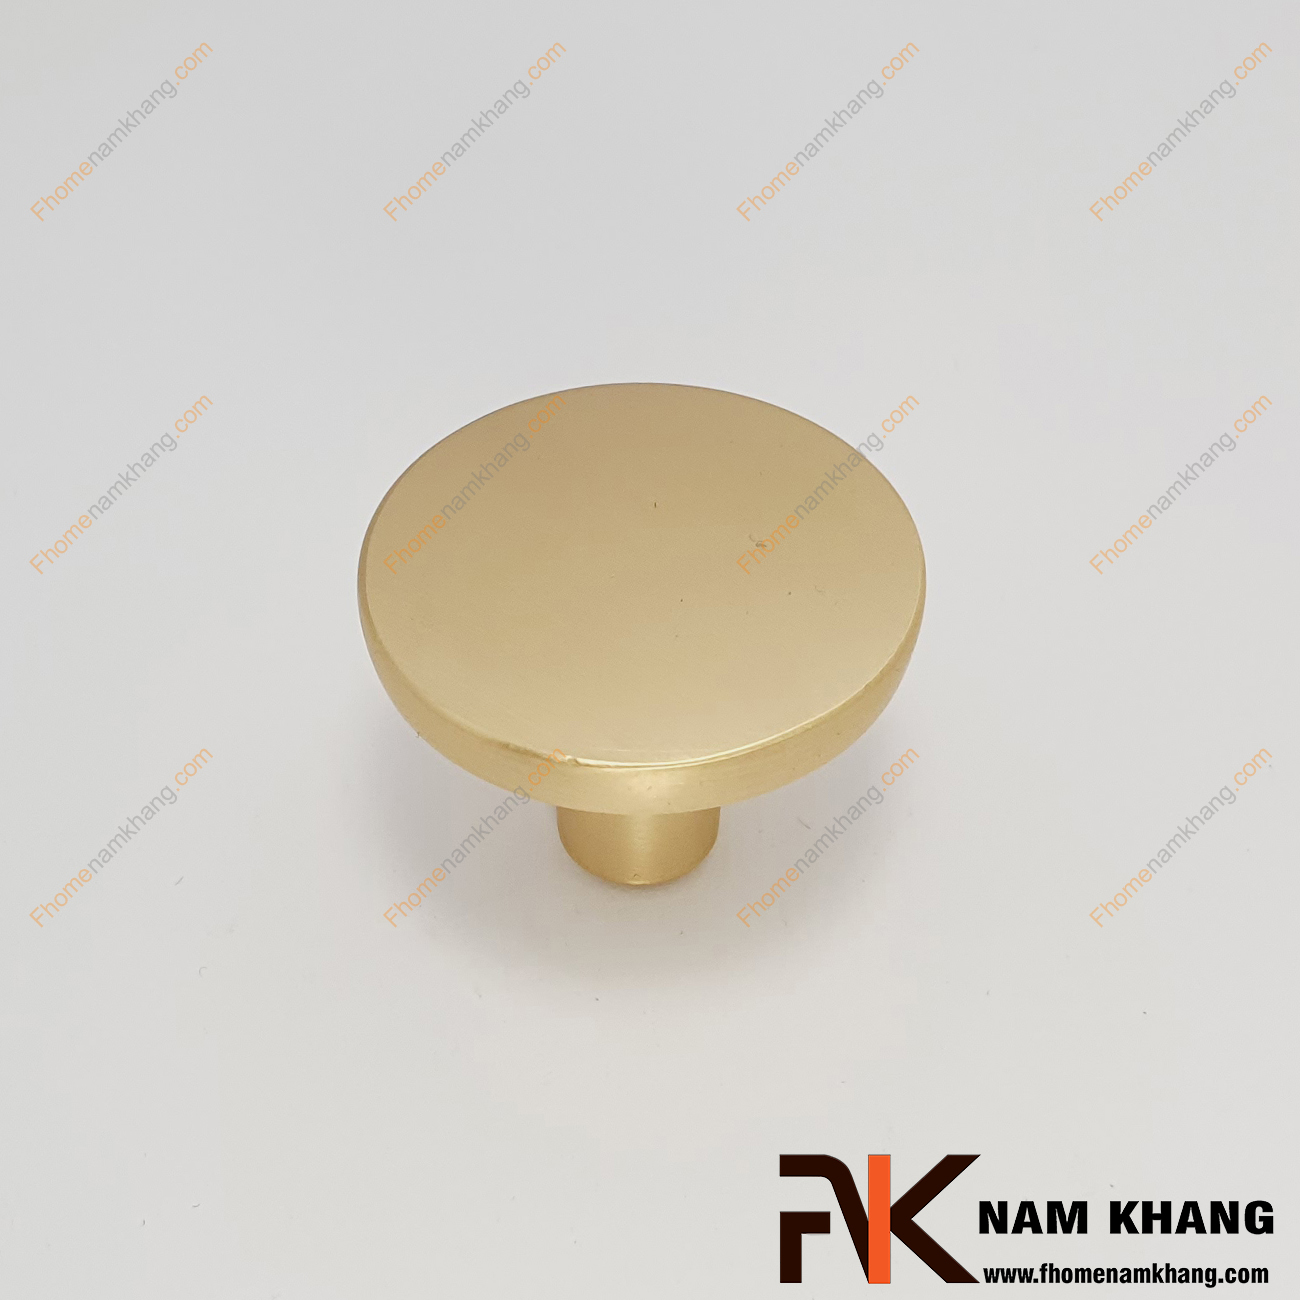 Núm cửa tủ dạng tròn màu vàng mờ NK455T-VM Một thiết kế rất đơn giản, một chất liệu chất lượng cao, một sản phẩm đáp ứng được tất cả các tiêu chí nội thất. 